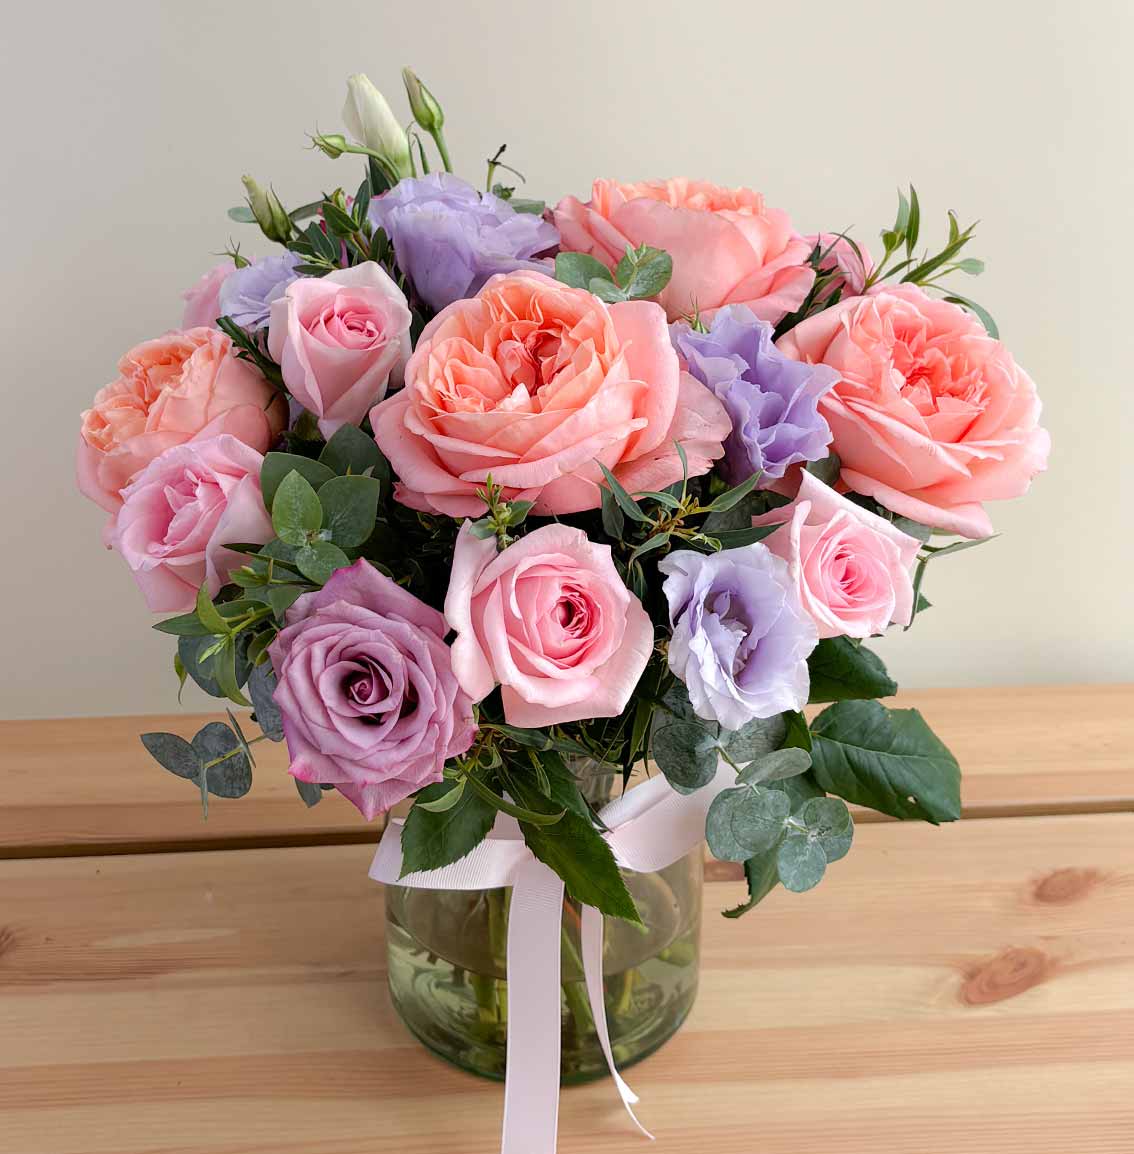 envio de flores con rosas inglesas y lisianthus